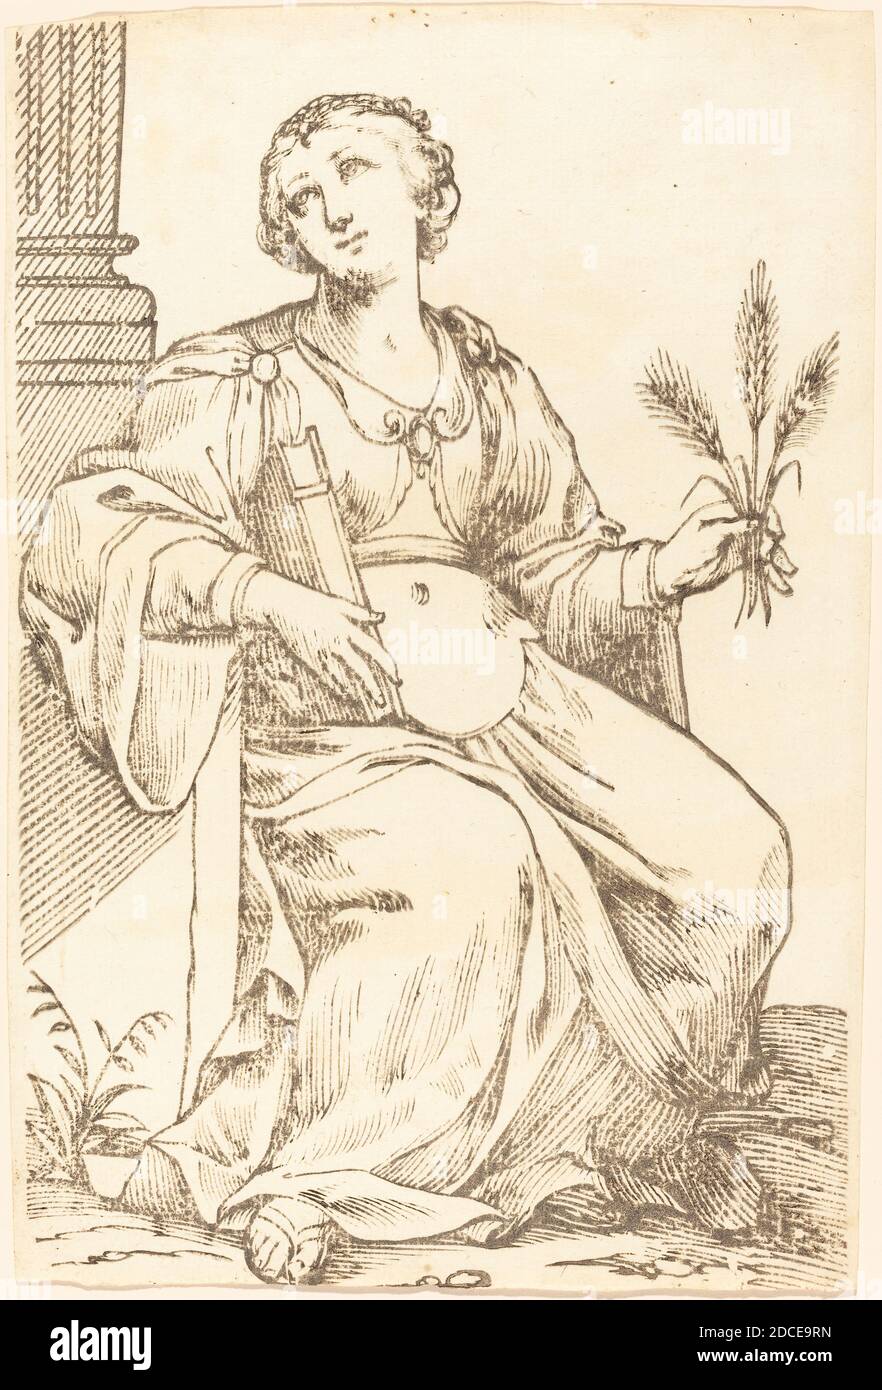 Jacques Stella, (artiste), Français, 1596 - 1657, Sibylla Samia, série de Sibyls, (série), 1625, coupe de bois Banque D'Images